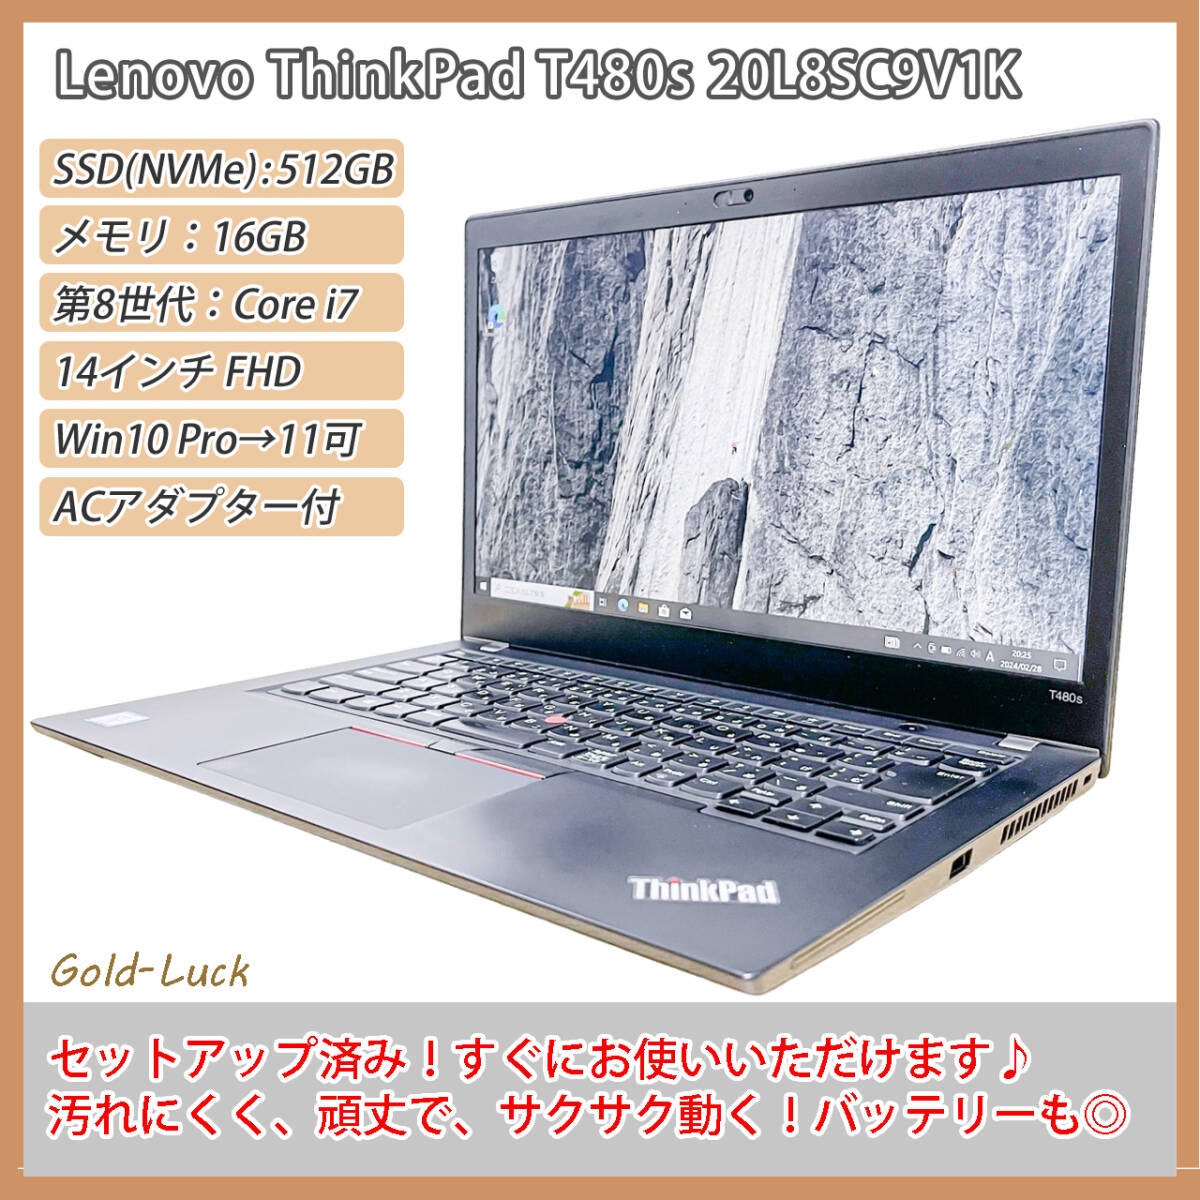 売れ済最安 【爆速☆バッテリー劣化・少】レノボ ThinkPad T480s Core